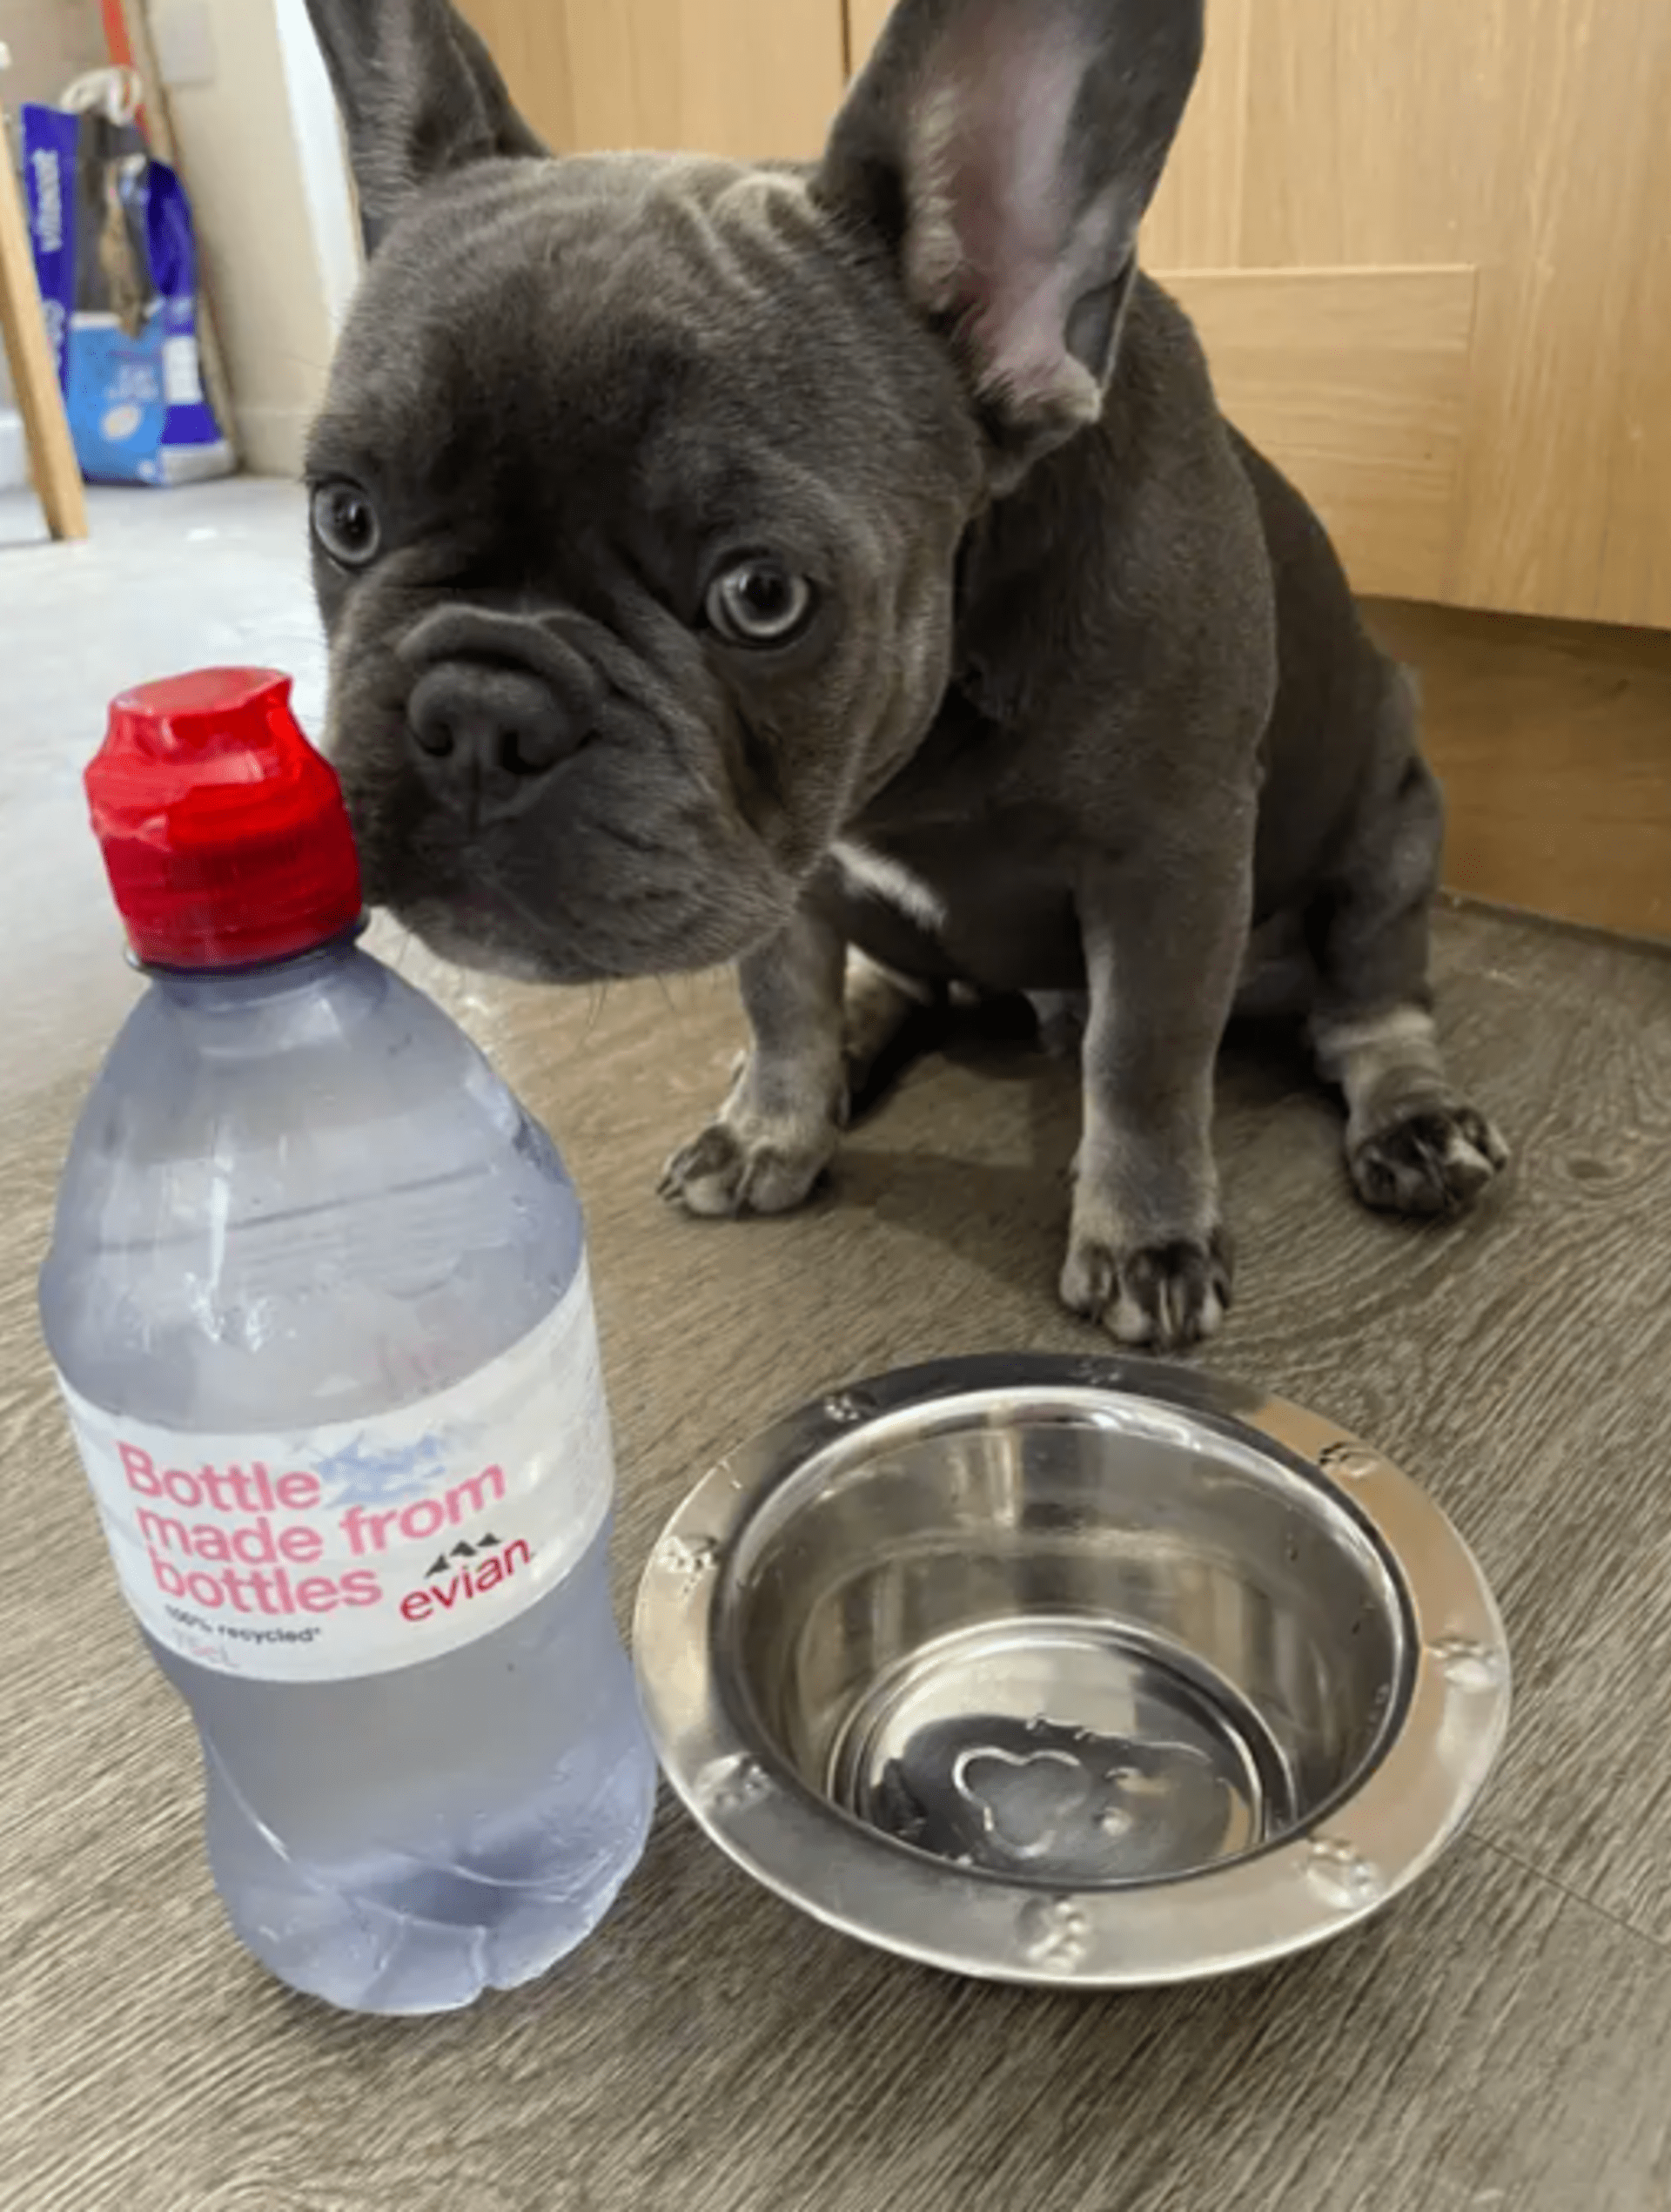 Lizzi Pallister svého psa rozmazlila a on nechce pít vodu z kohoutku